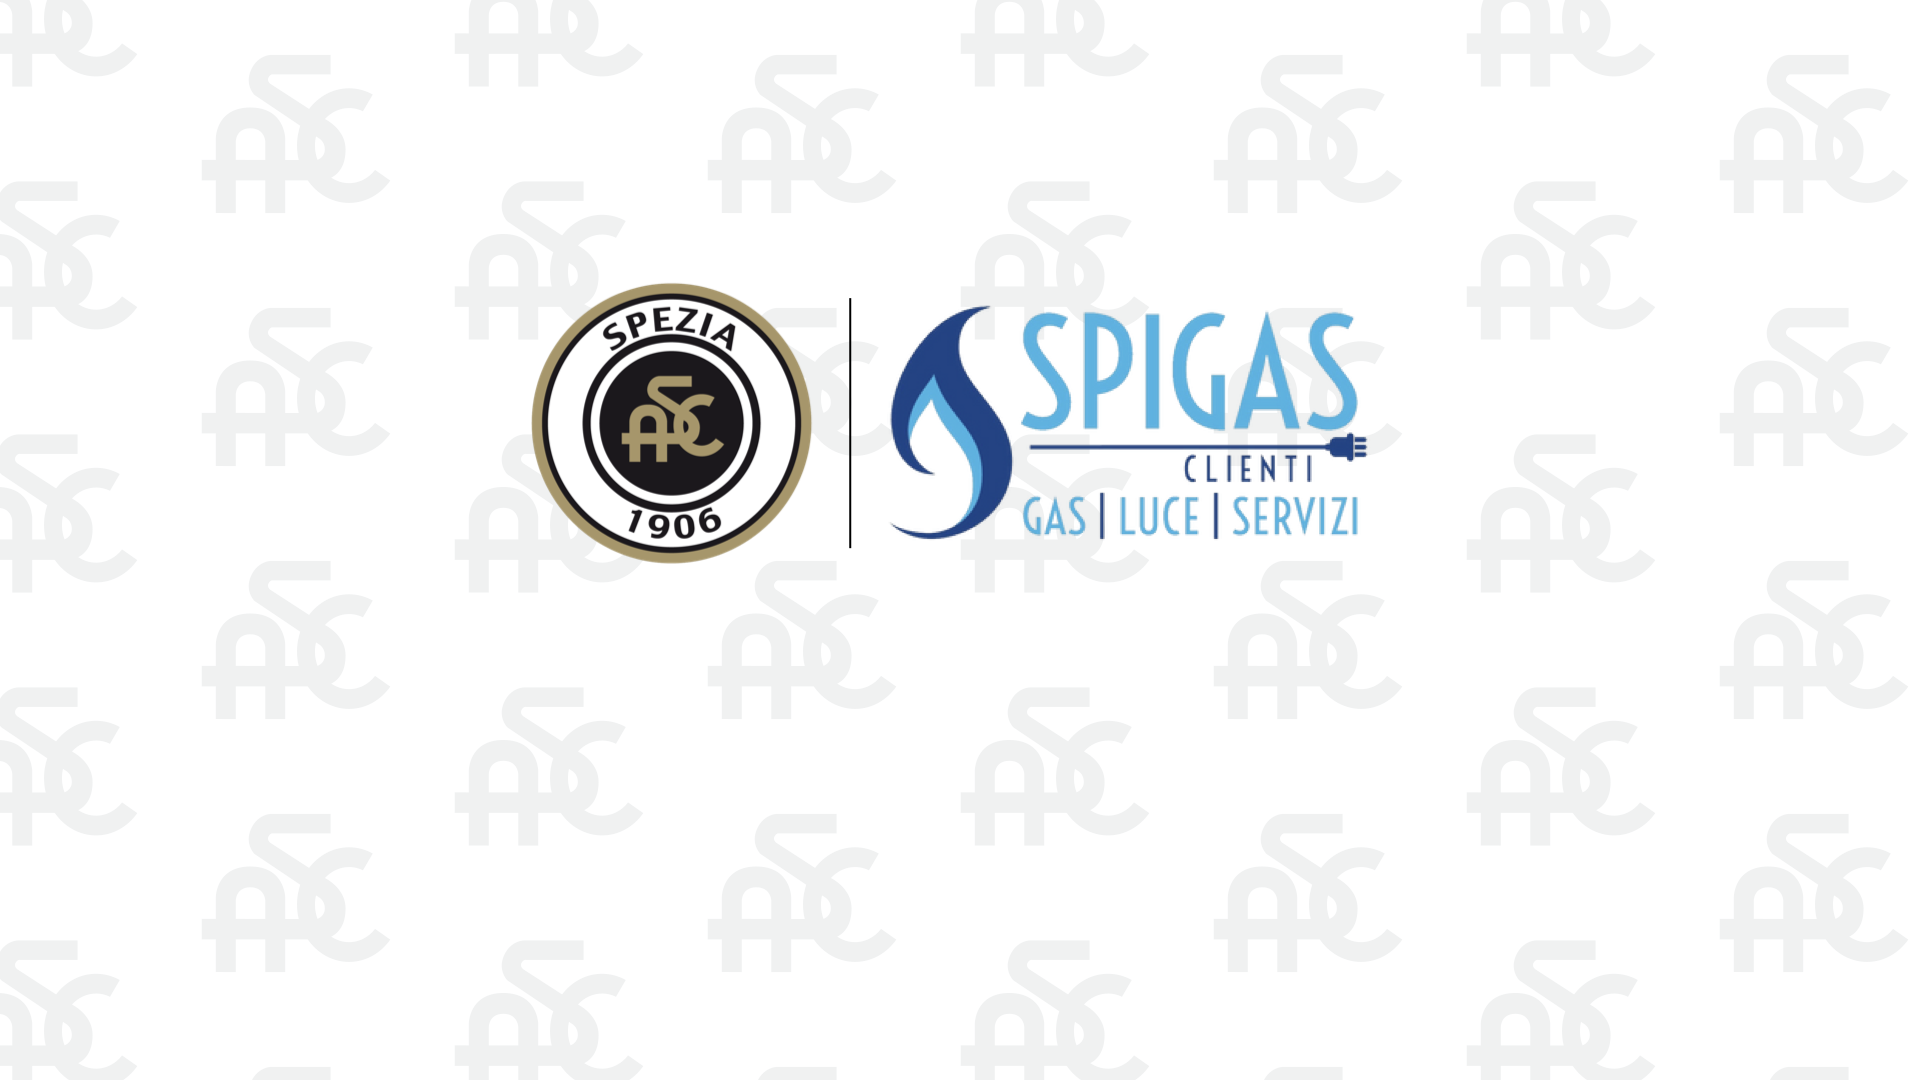 Spigas Clienti si conferma Top Sponsor dello Spezia Calcio